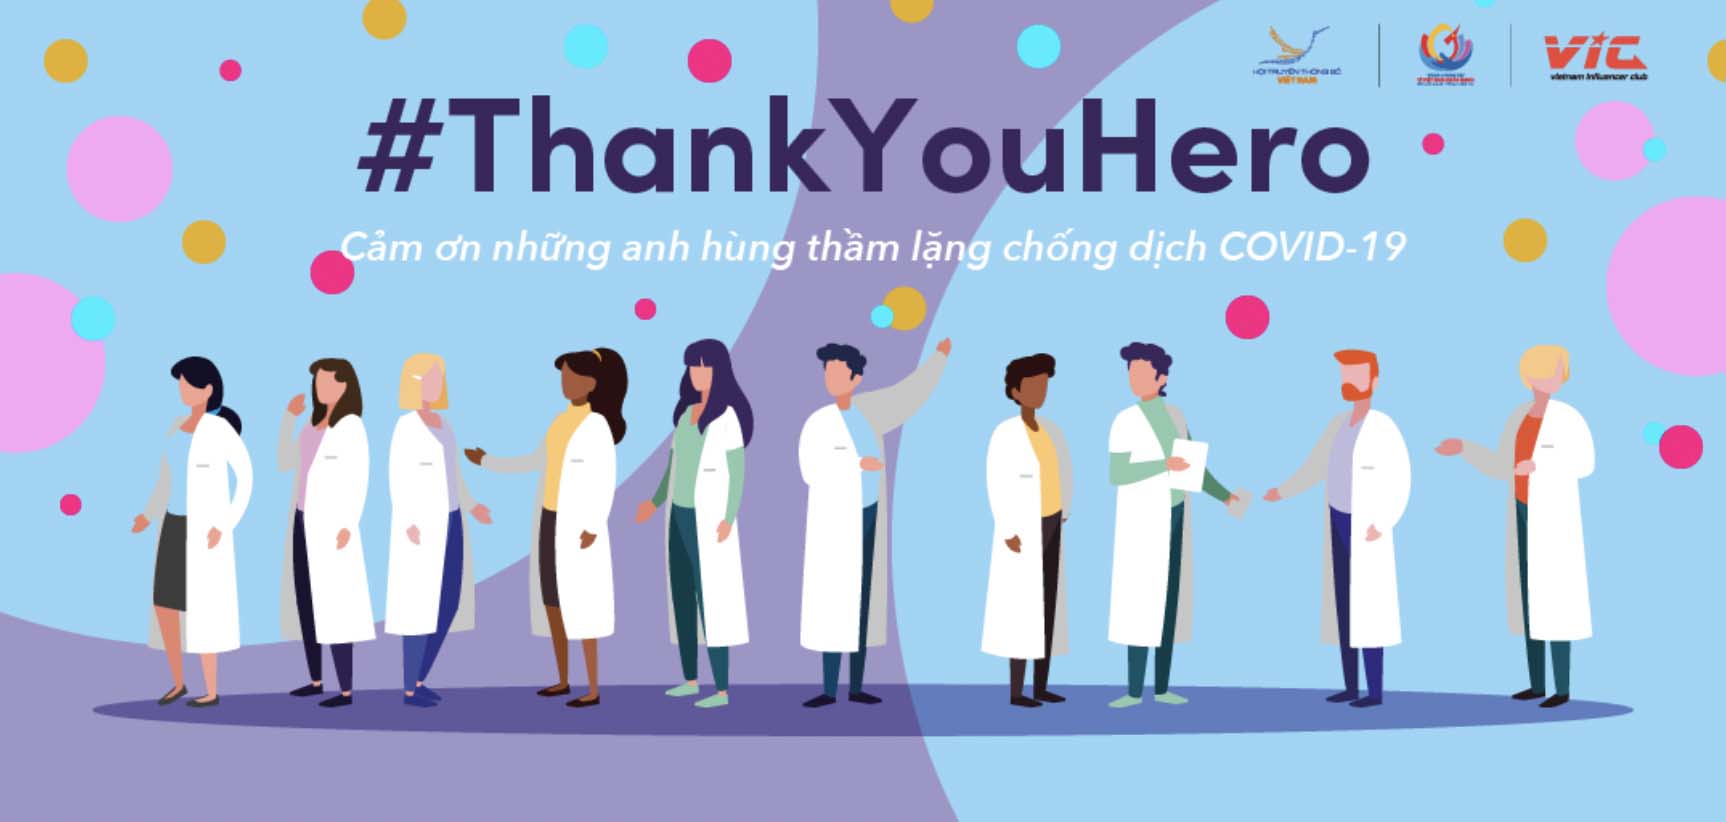 TikTok phát động Chiến dịch #ThankYouHero gửi lời tri ân đến đội ngũ y, bác sĩ và cán bộ y tế đang chiến đấu chống COVID-19 tại Việt Nam